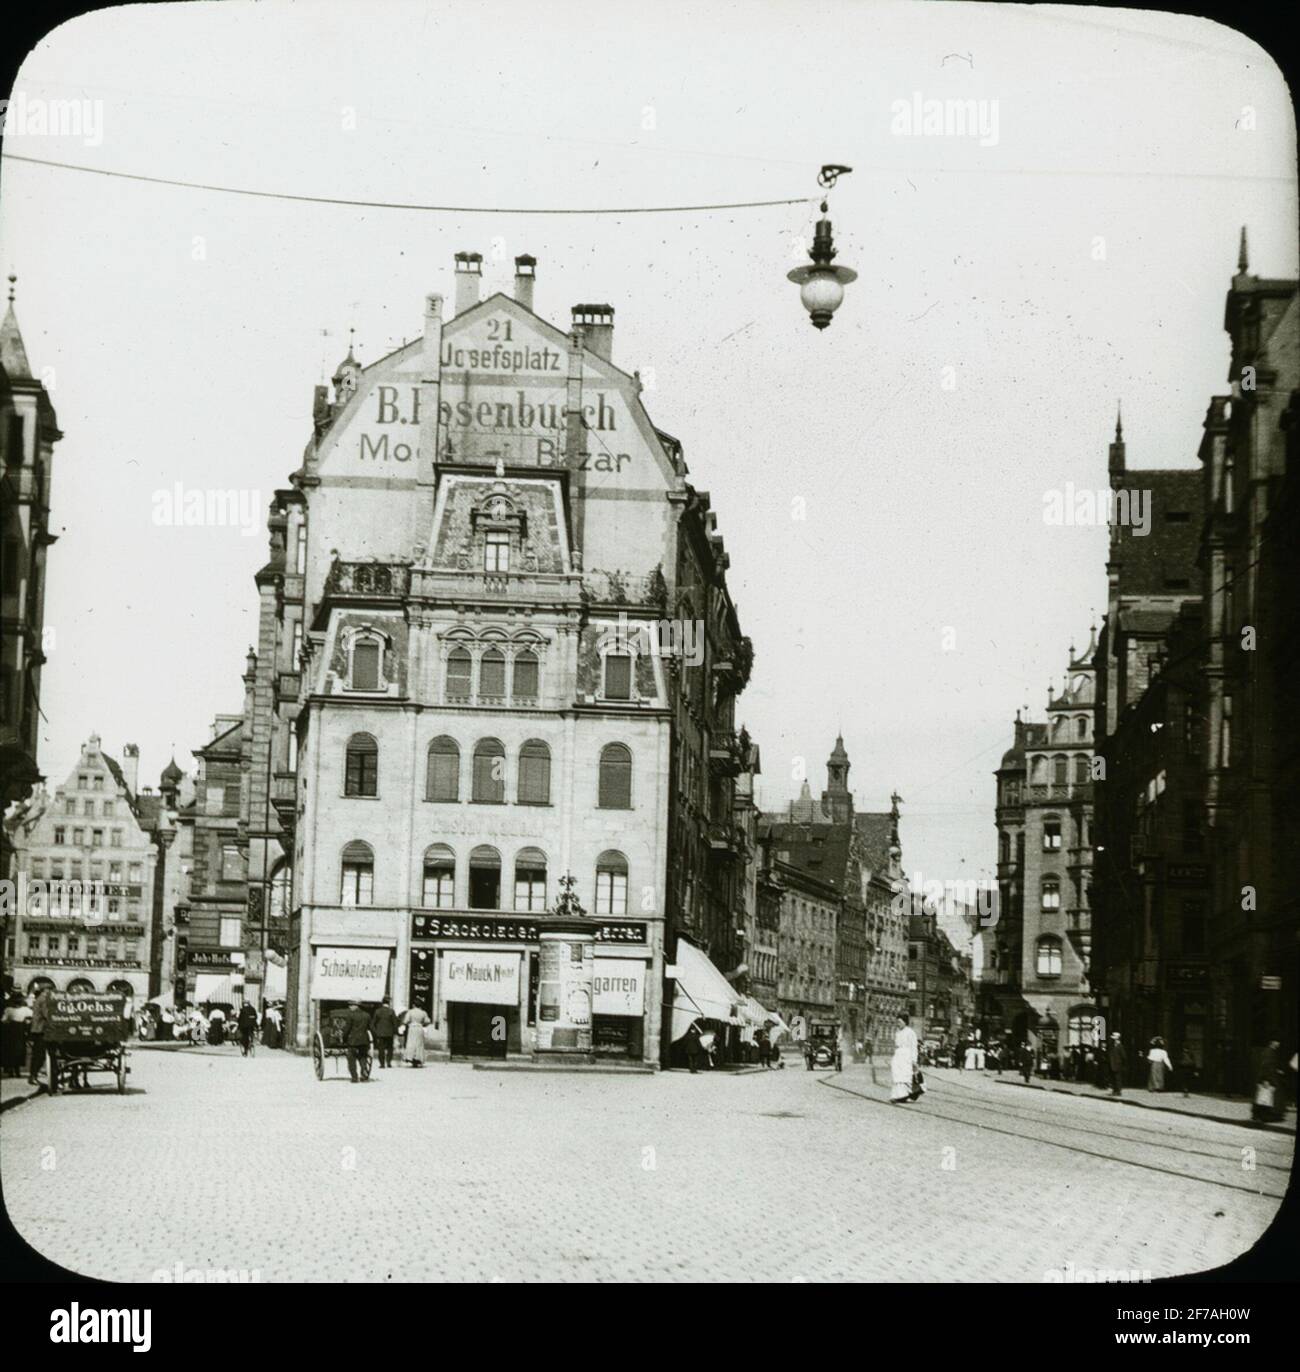 Skiopticone-Bild mit Motiven des Platzes in Nürnberg. Josephsplatz 21. Das  Bild wurde in Karton mit der Aufschrift Spring Travel 1910 Nürnberg 9  aufbewahrt. XV Stockfotografie - Alamy